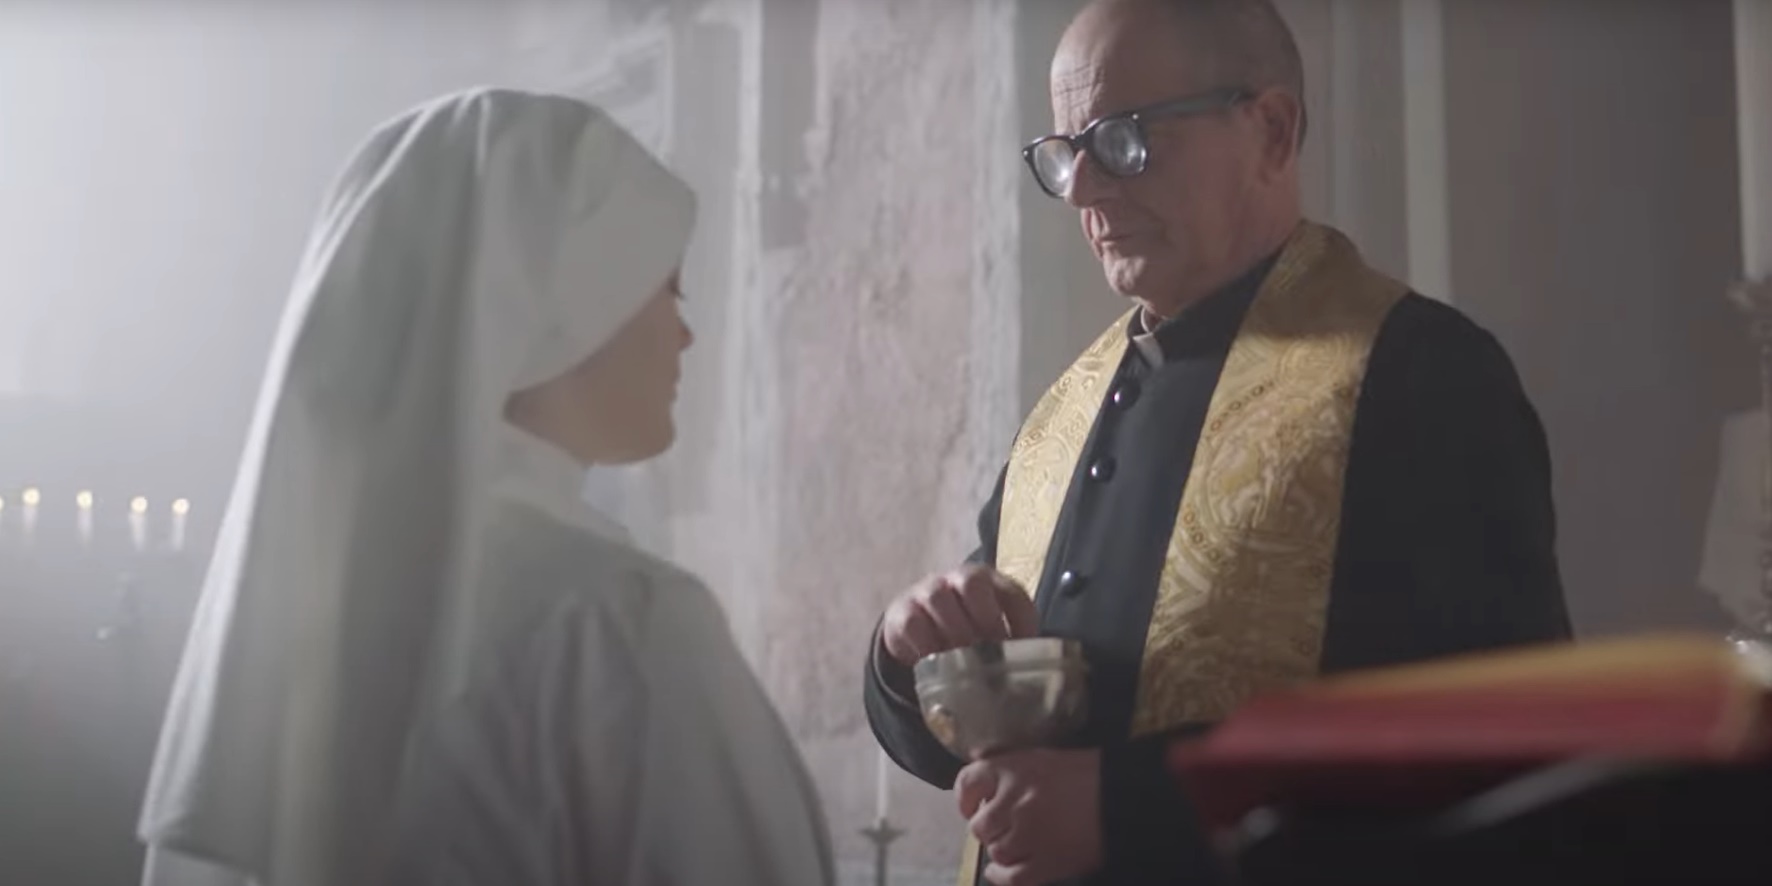 Predmet osuda: Italijani traže zabranu reklame u kojoj svećenik čipsom pričešćuje časnu sestru